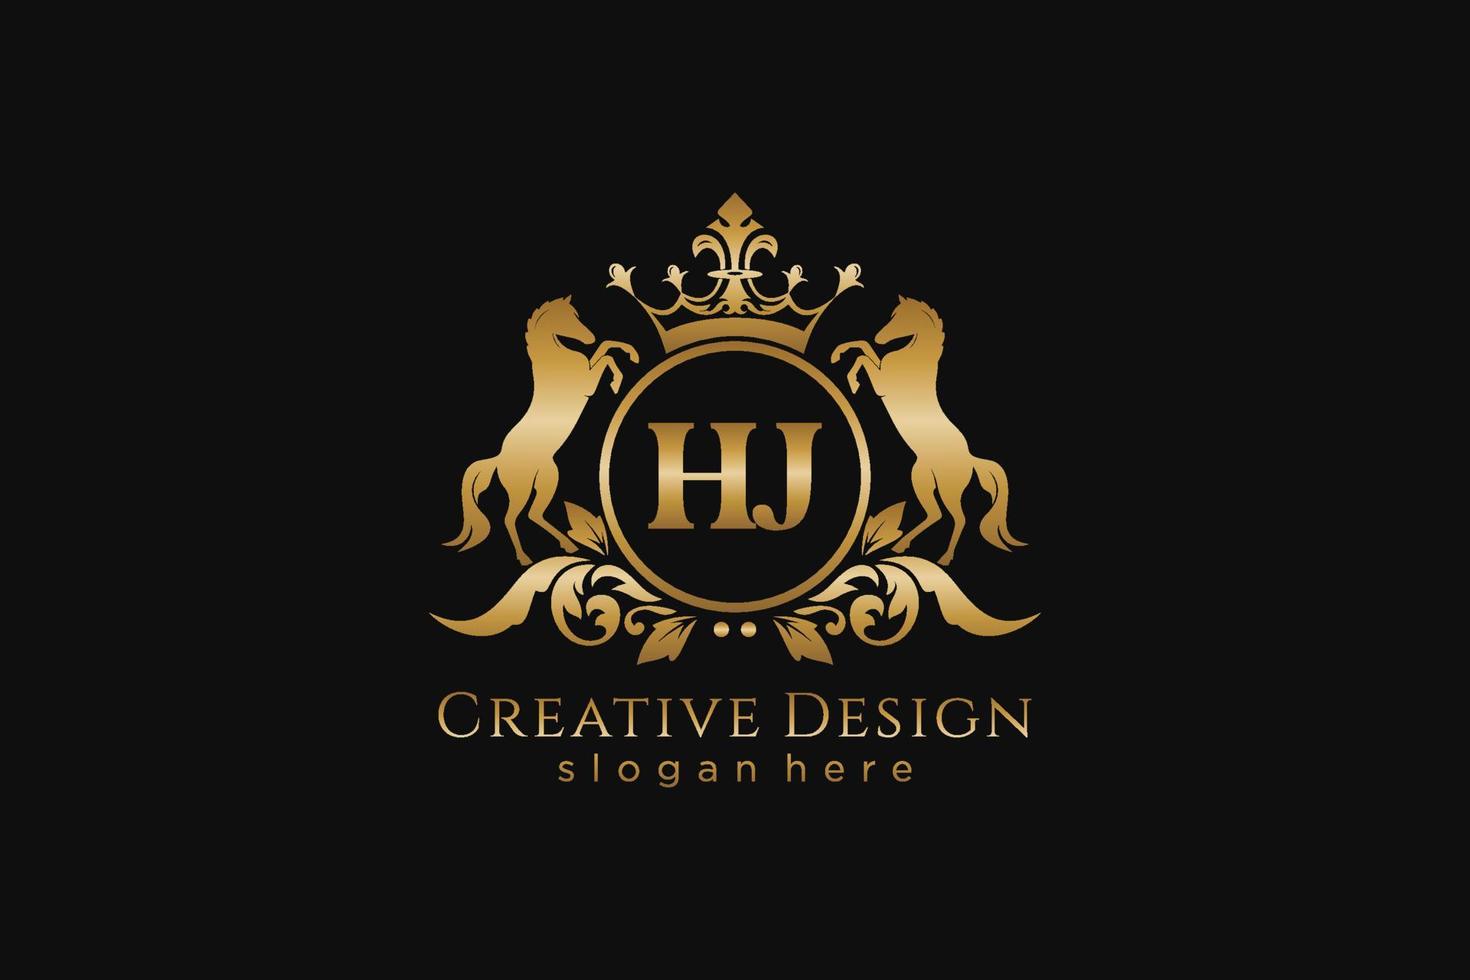 cresta dorada retro hj inicial con círculo y dos caballos, plantilla de insignia con pergaminos y corona real - perfecto para proyectos de marca de lujo vector